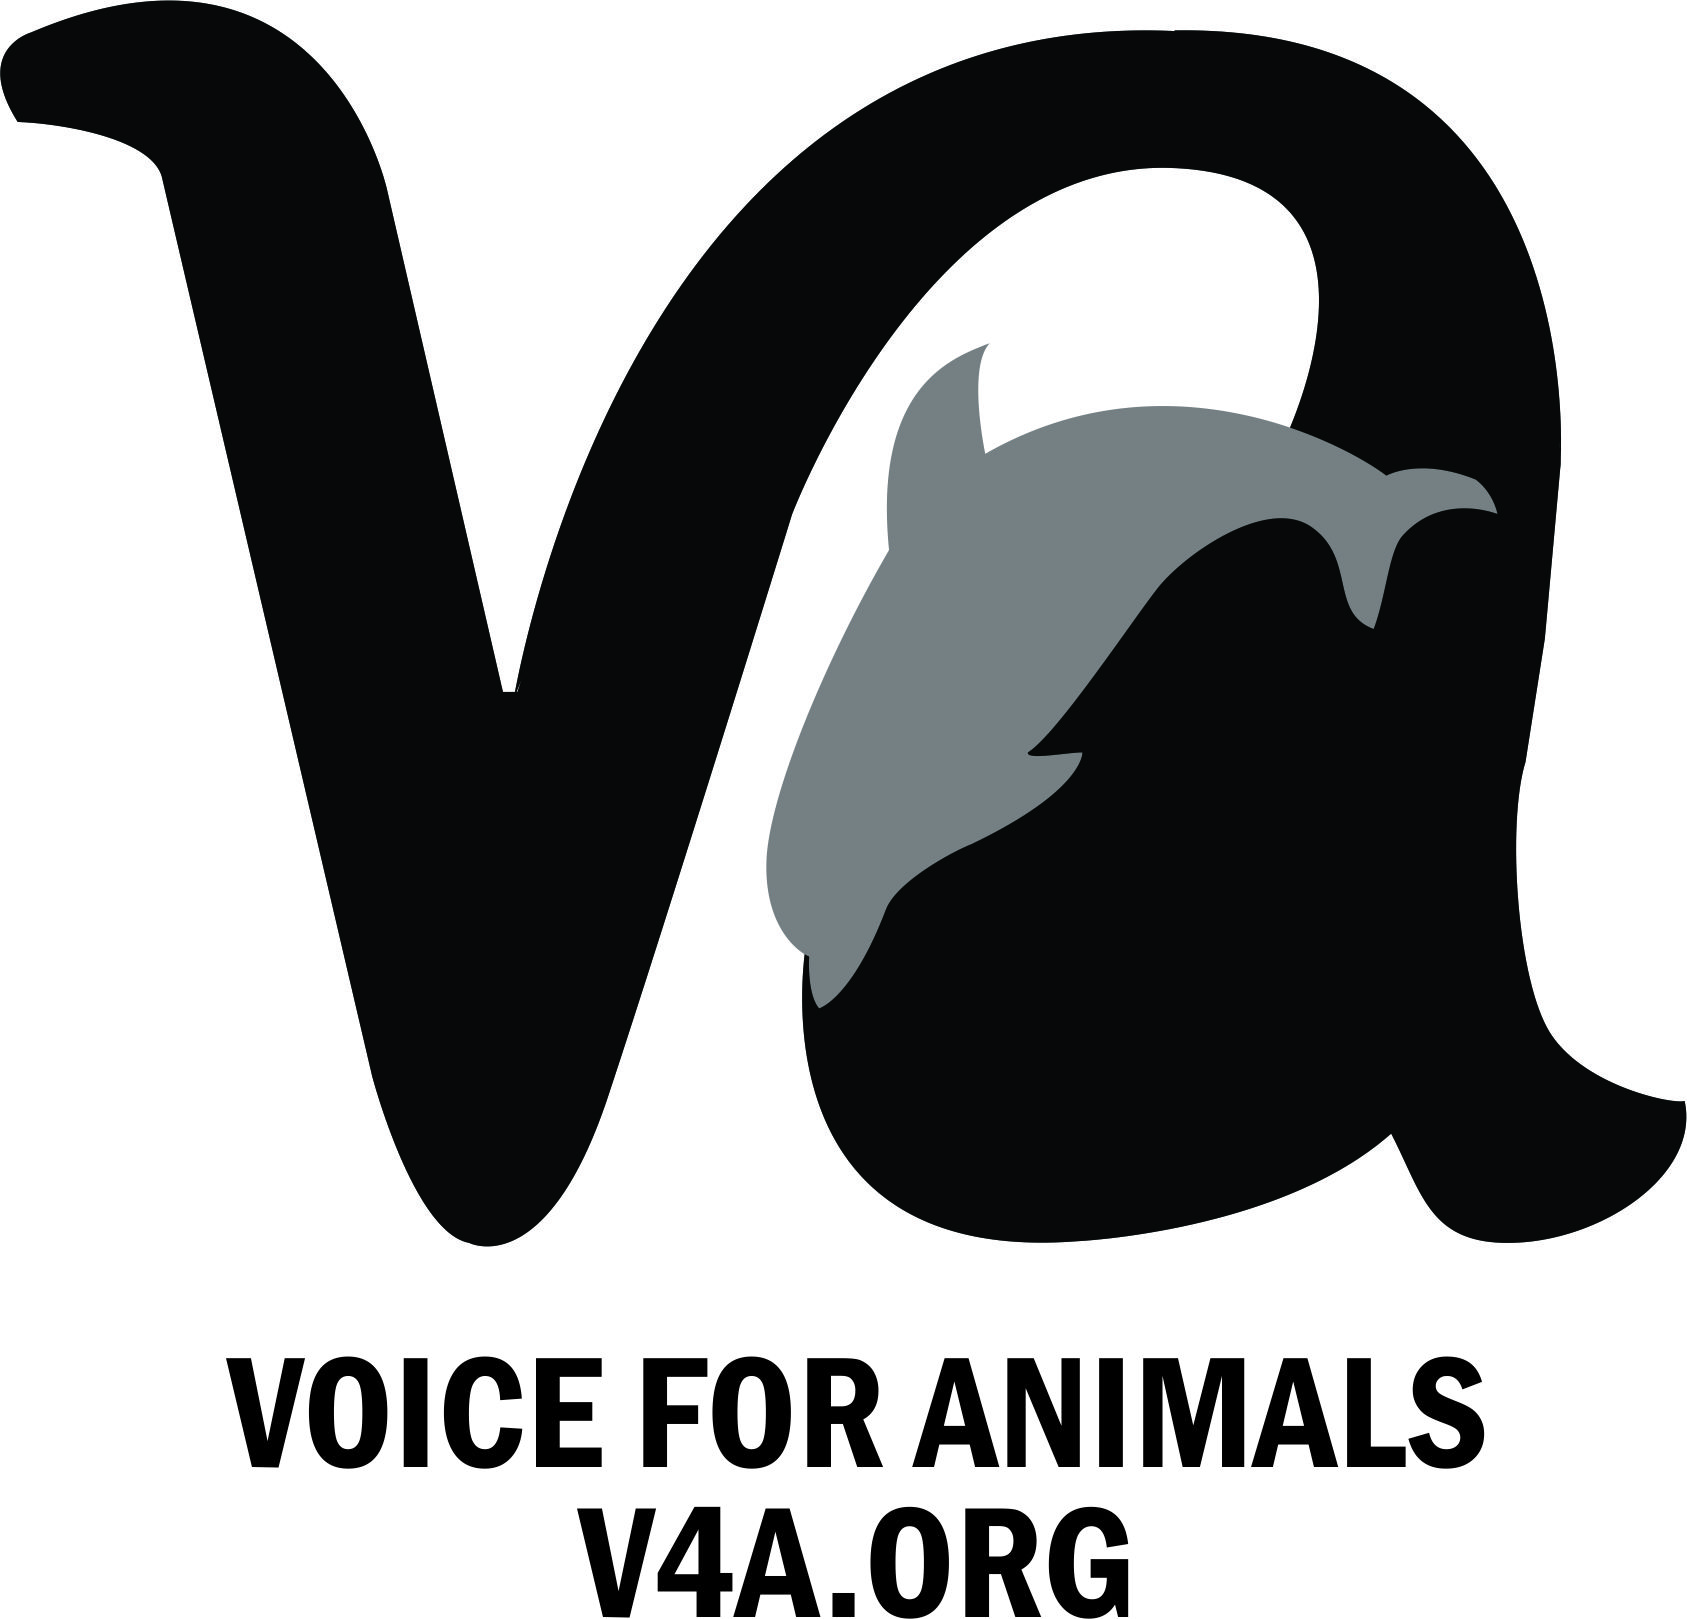 Voice 4 Animals